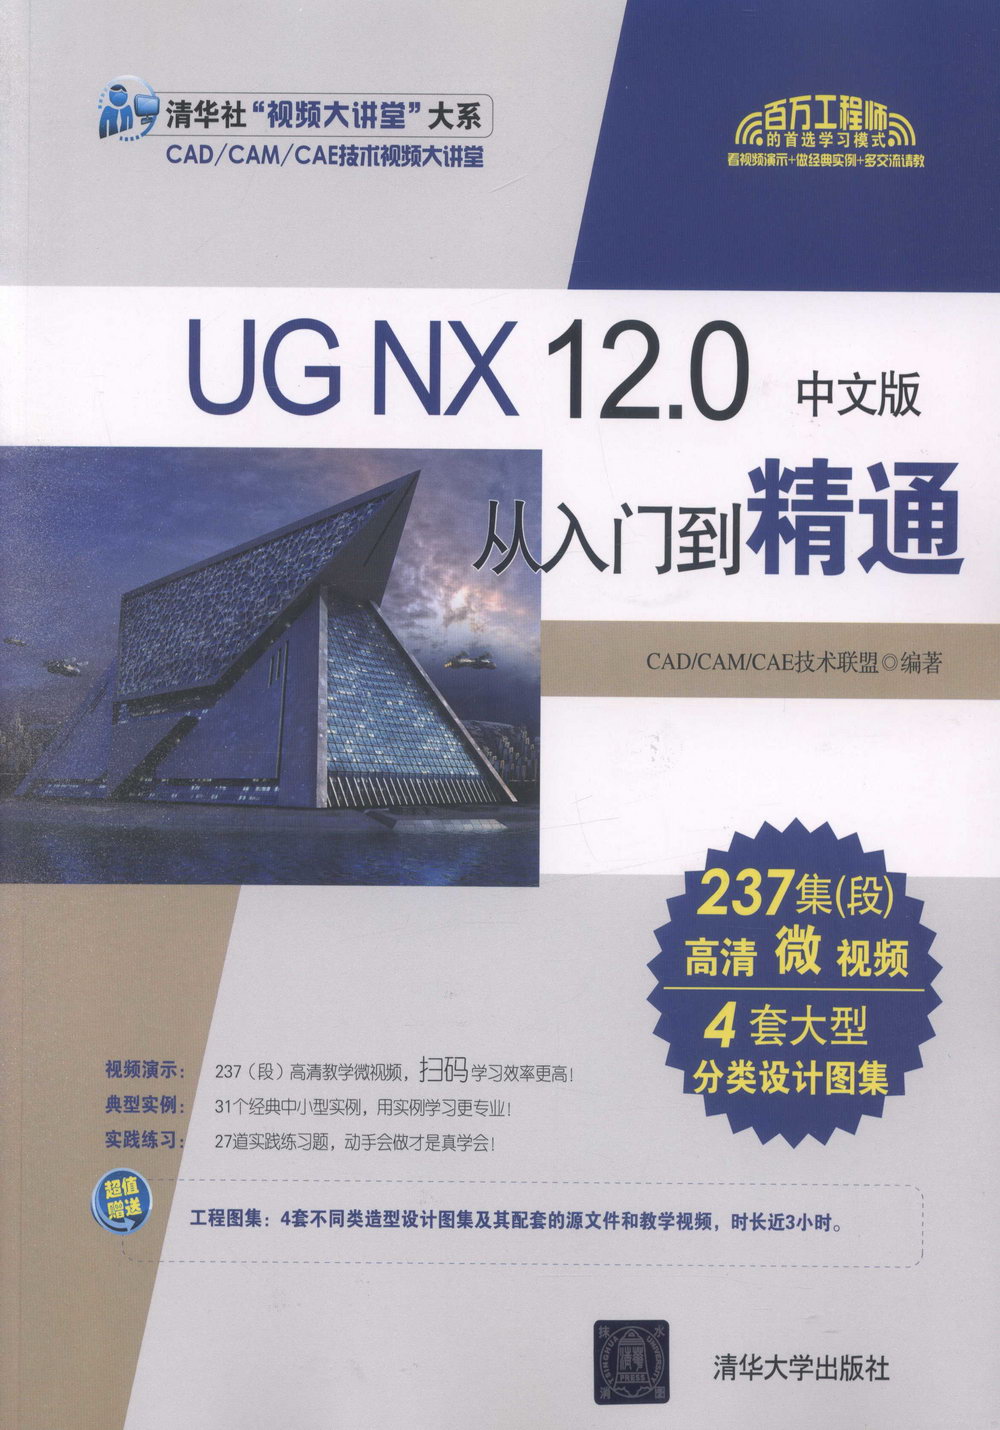 UG NX 12.0中文版從入門到精通